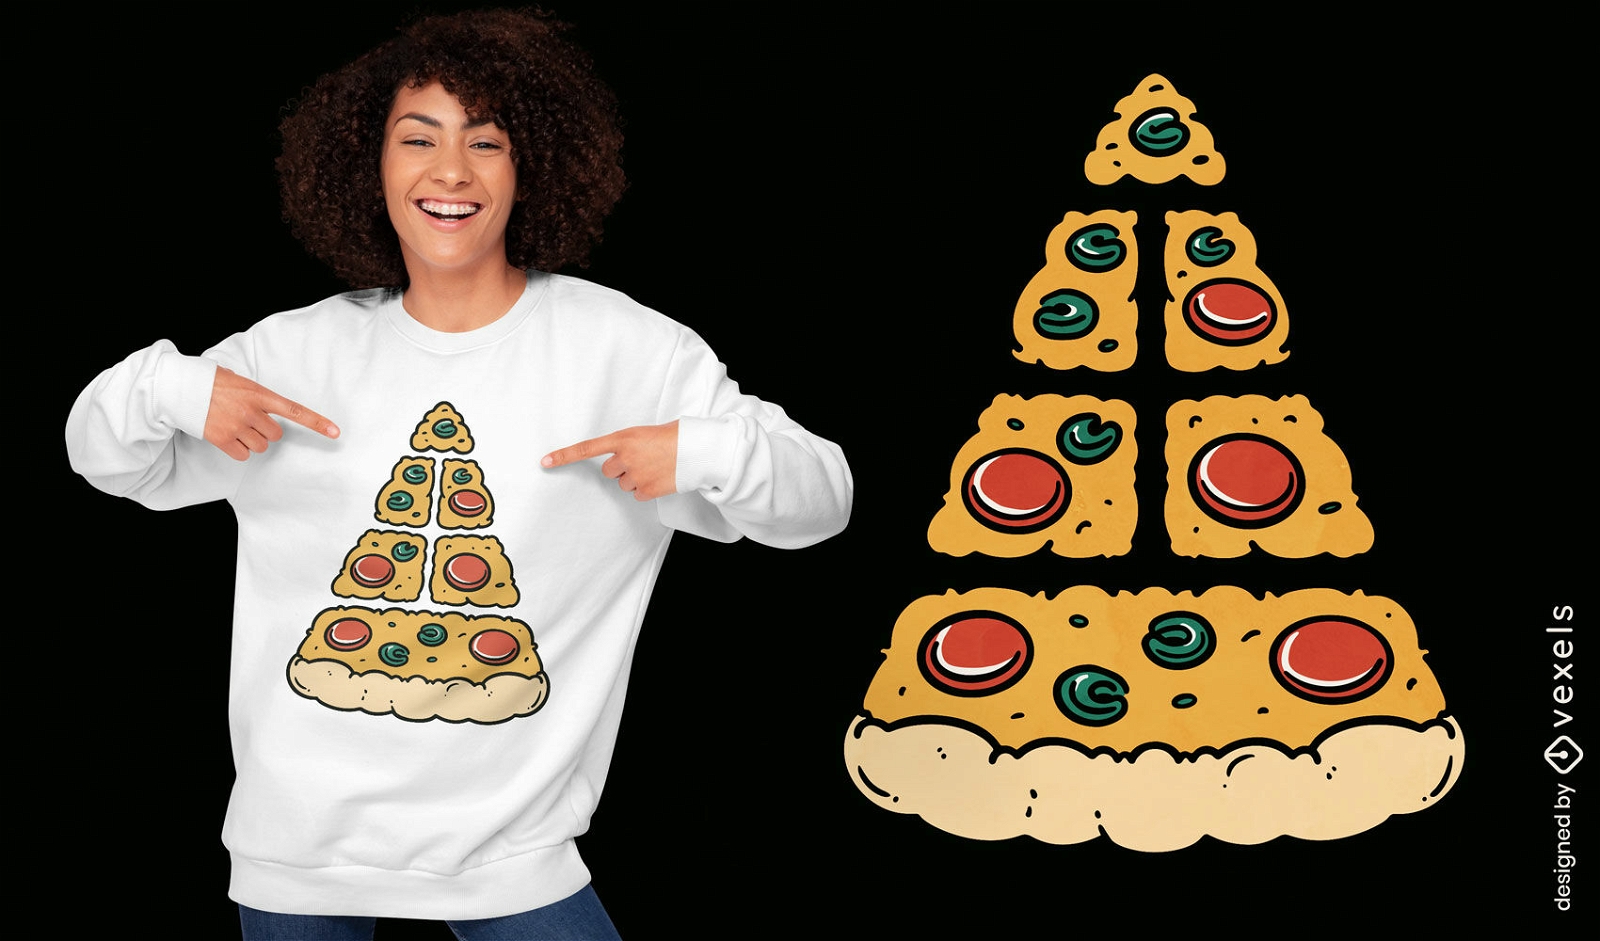 Pizza pyramid fast food t-shirt design